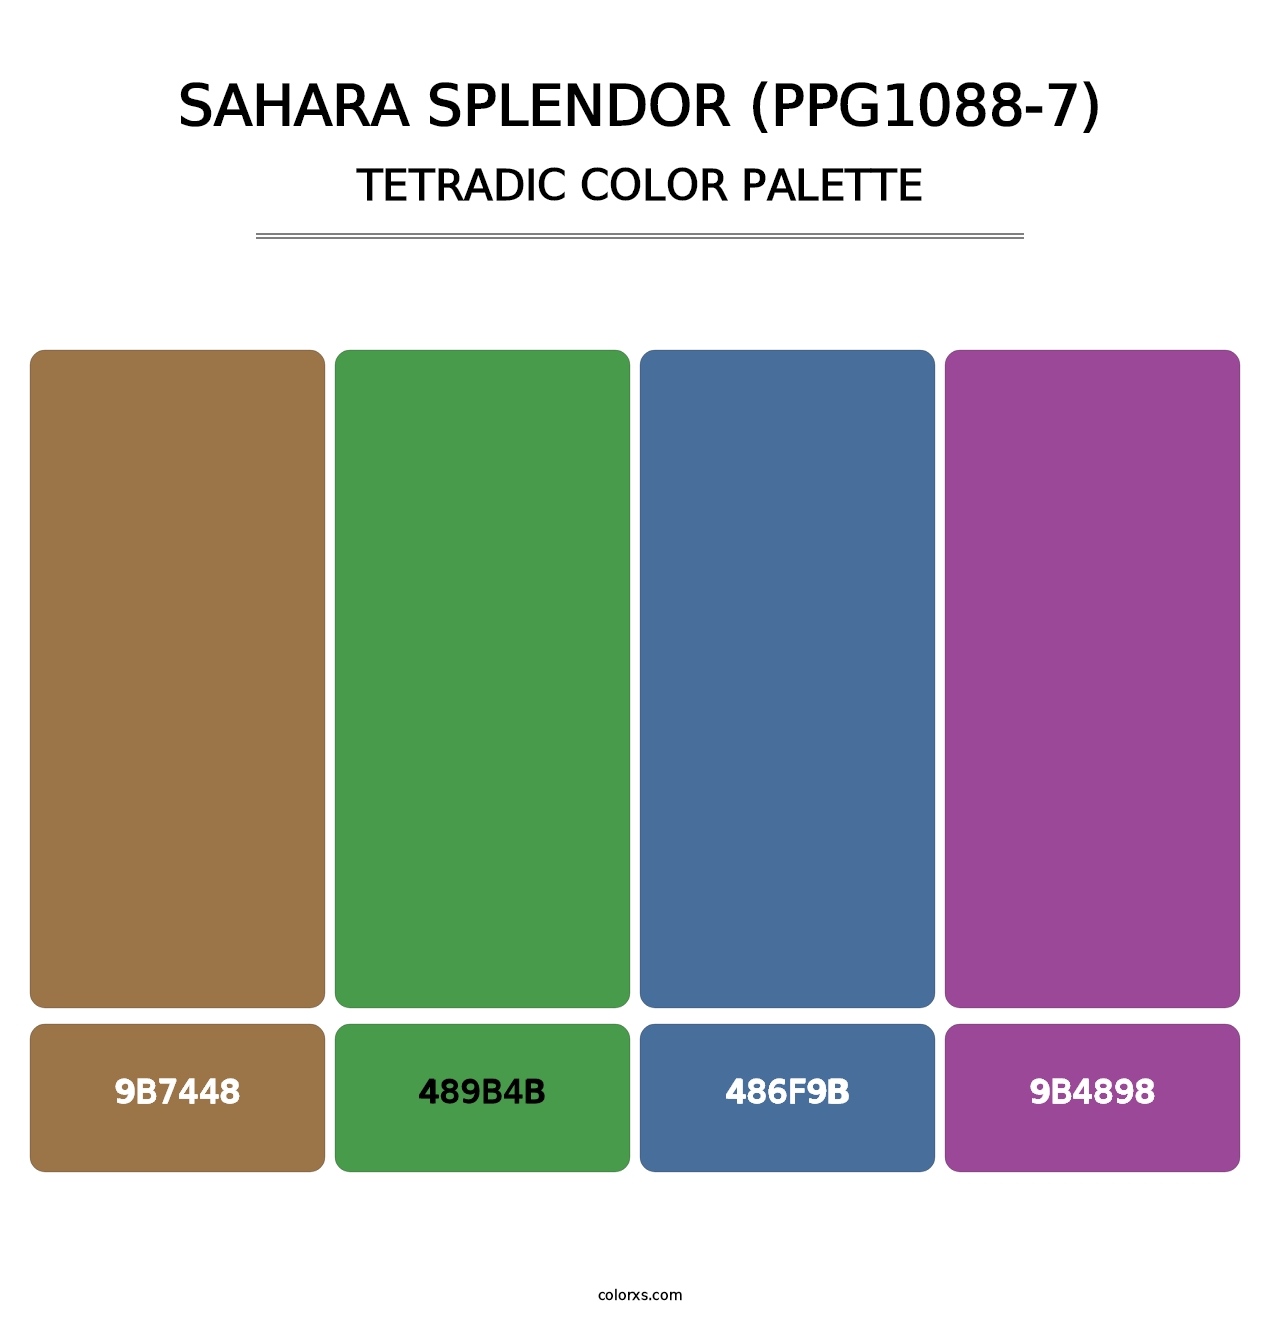 Sahara Splendor (PPG1088-7) - Tetradic Color Palette